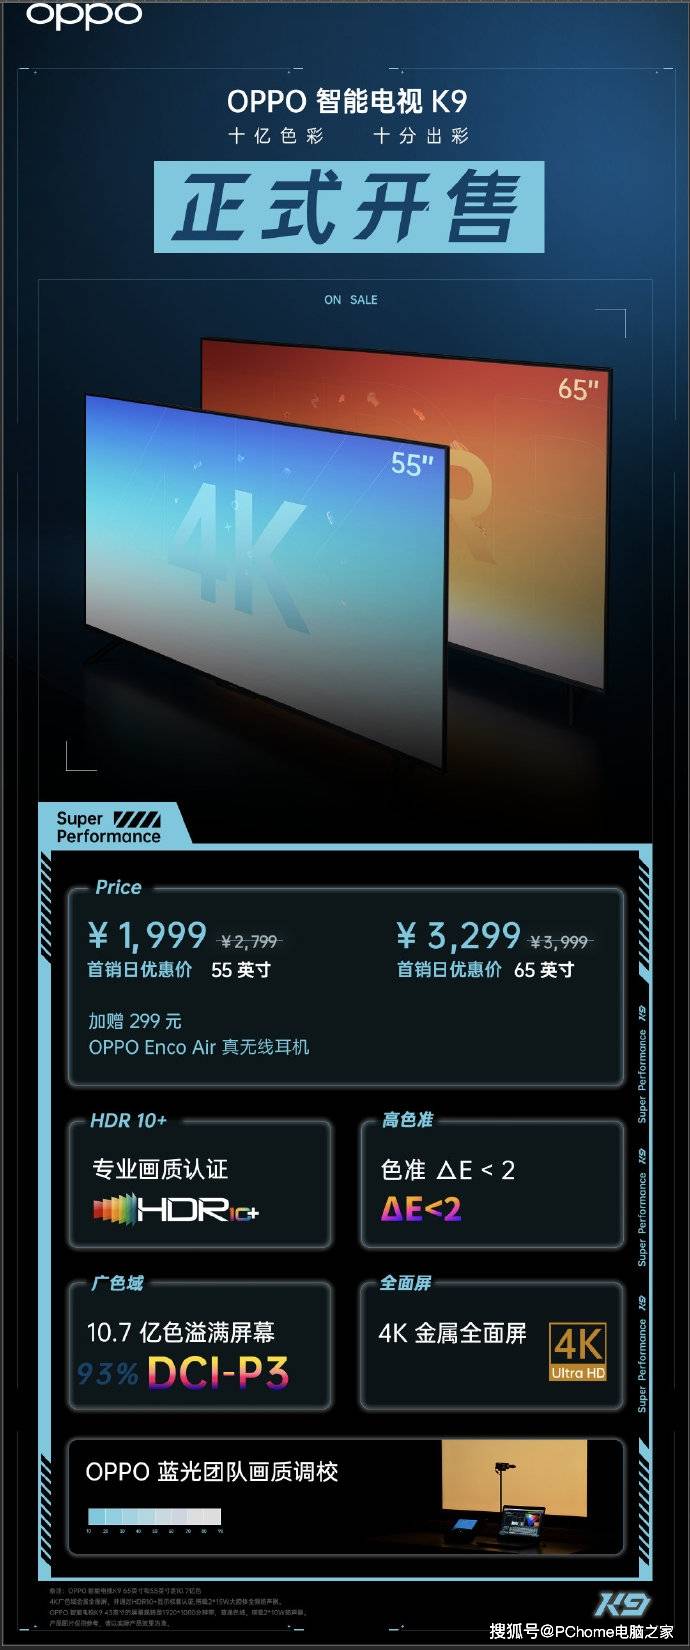 画质|OPPO智能电视K9正式开售 购买还加赠299元耳机